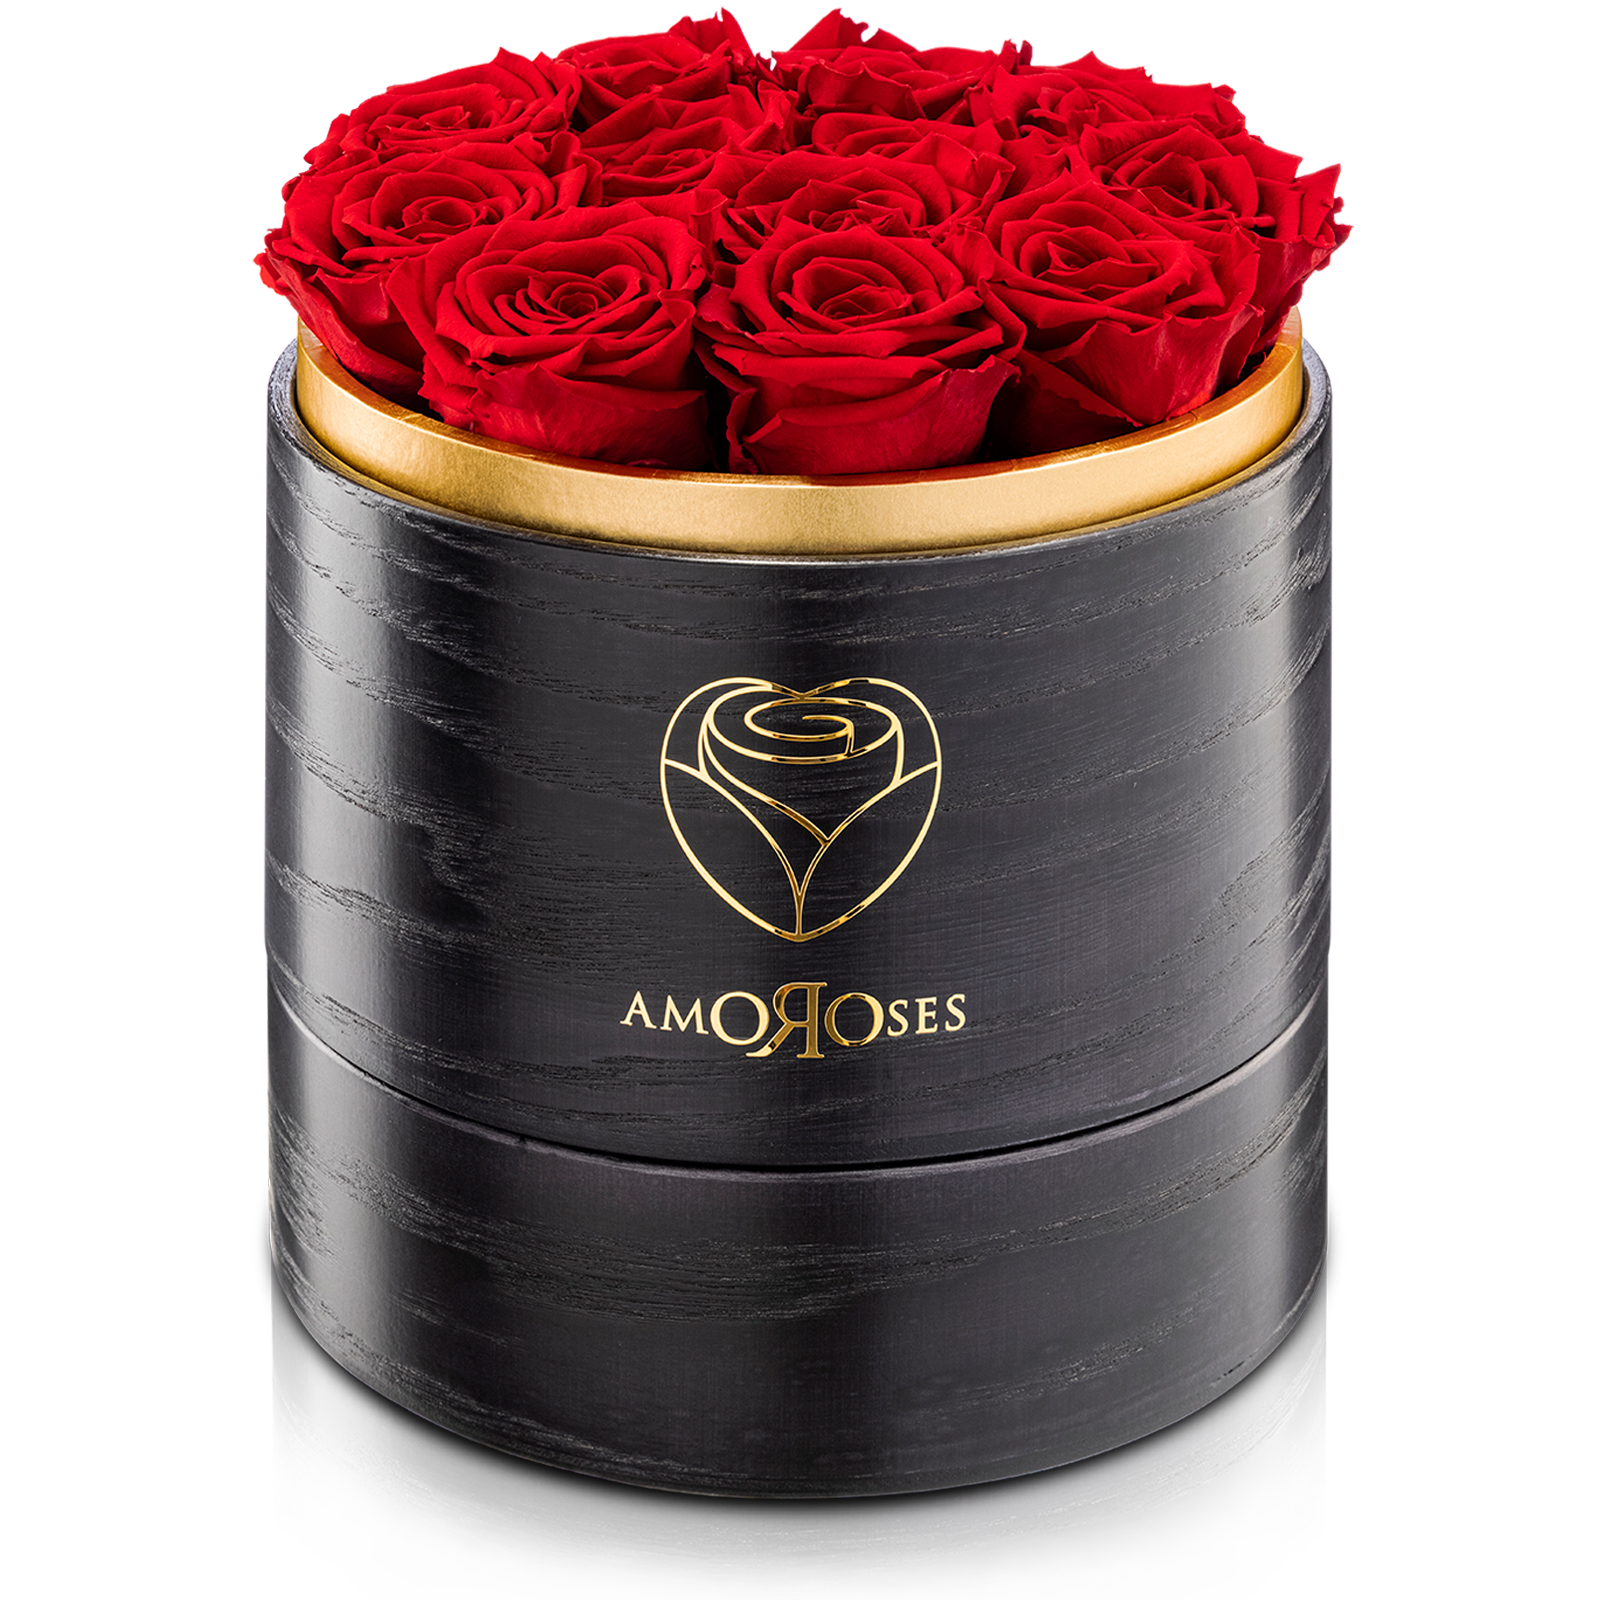 Amoroses SUPERIOR - Scatola in legno black fatta a mano con 12 rose rosse stabilizzate